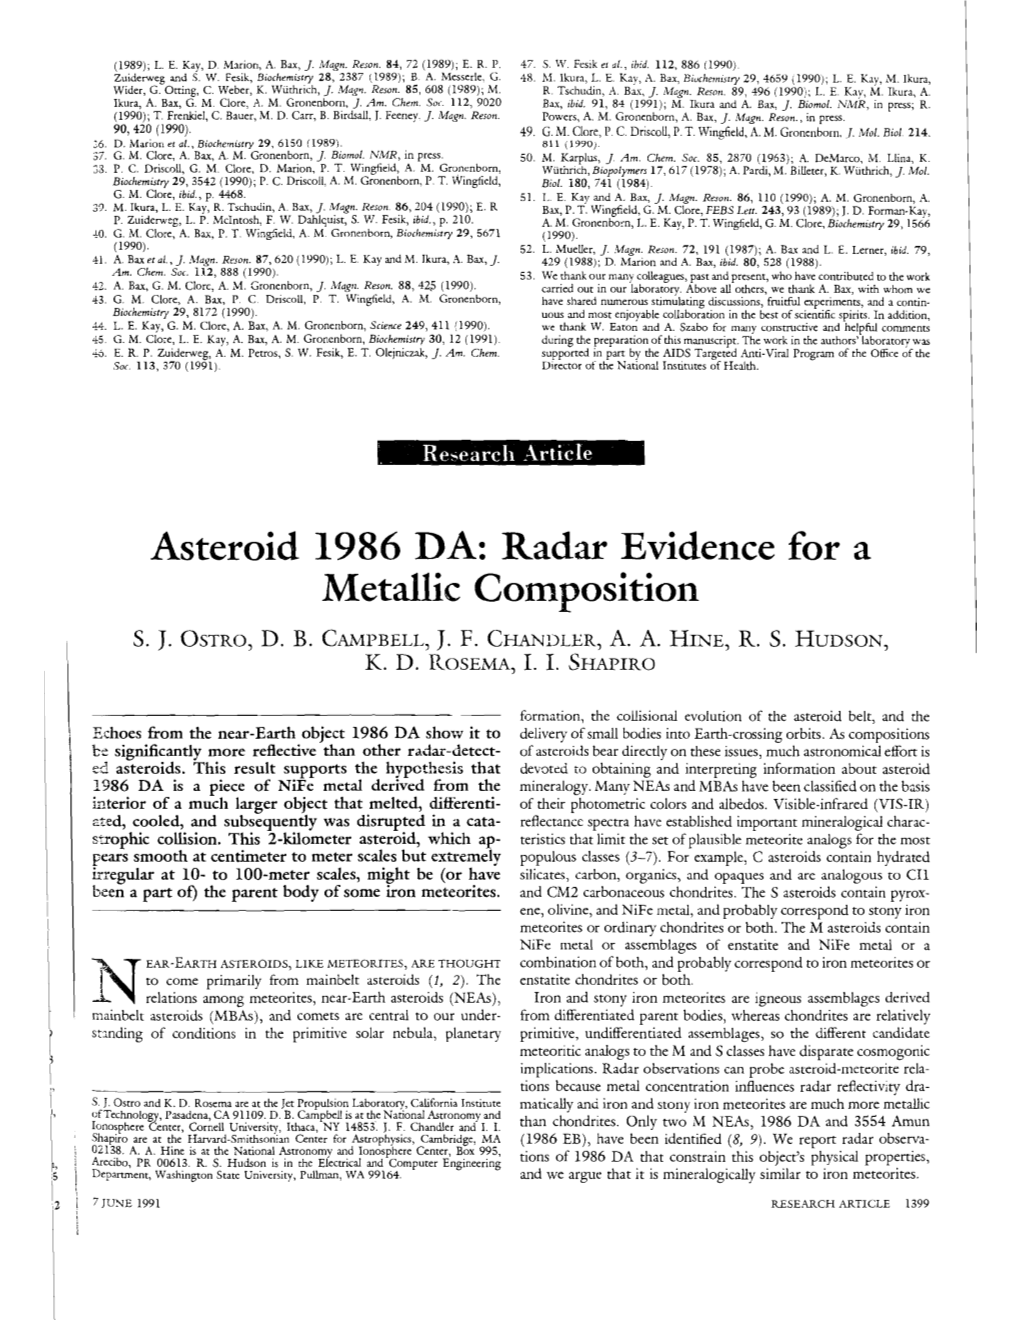 Asteroid 1986 DA: Radar Evidence for a Metallic Composition